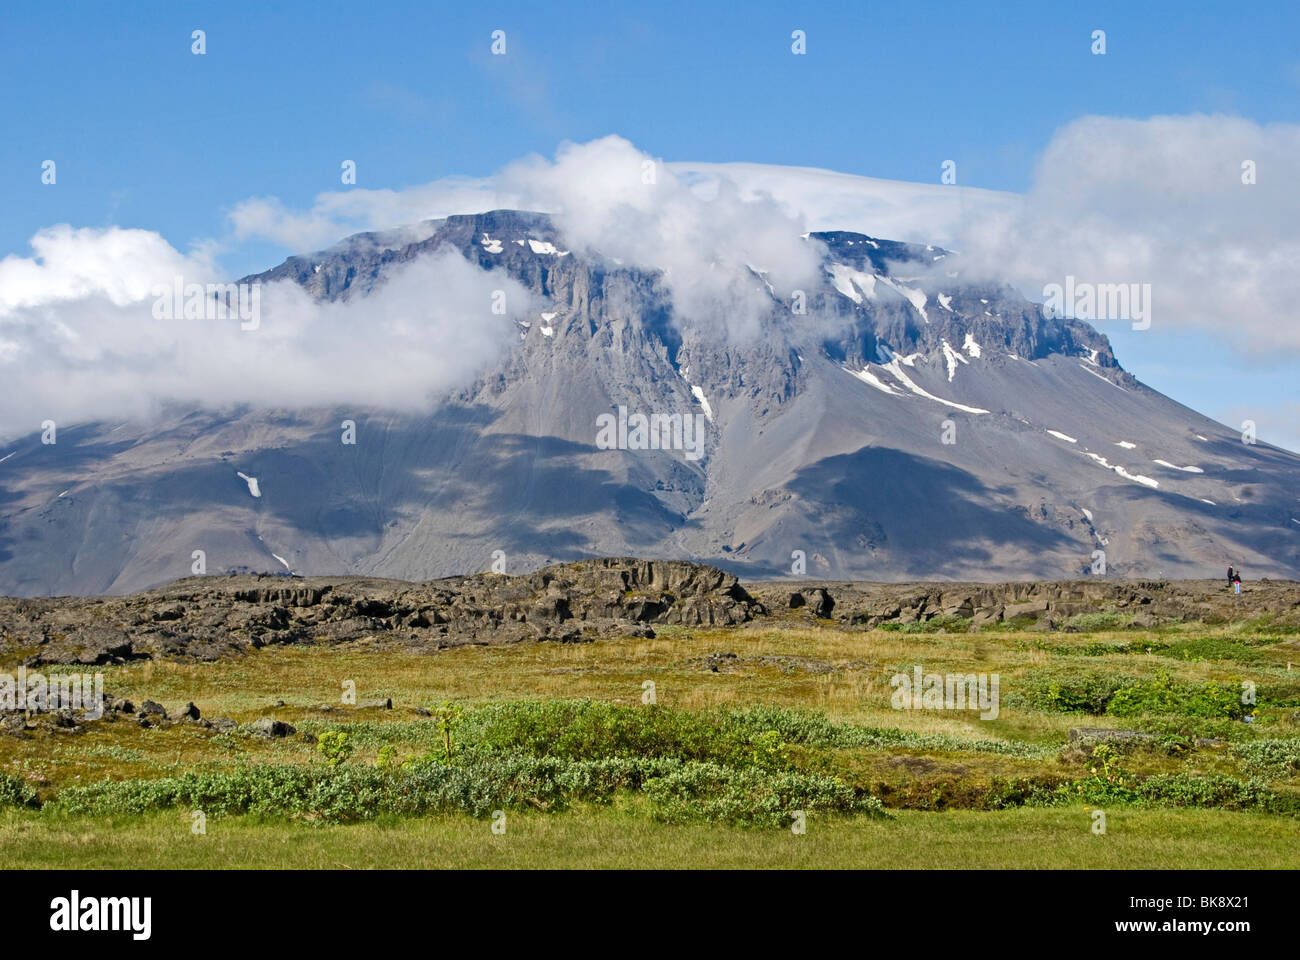 Mountain Herdubreid, 'broad shoulders', Herdubreid, Iceland Stock Photo